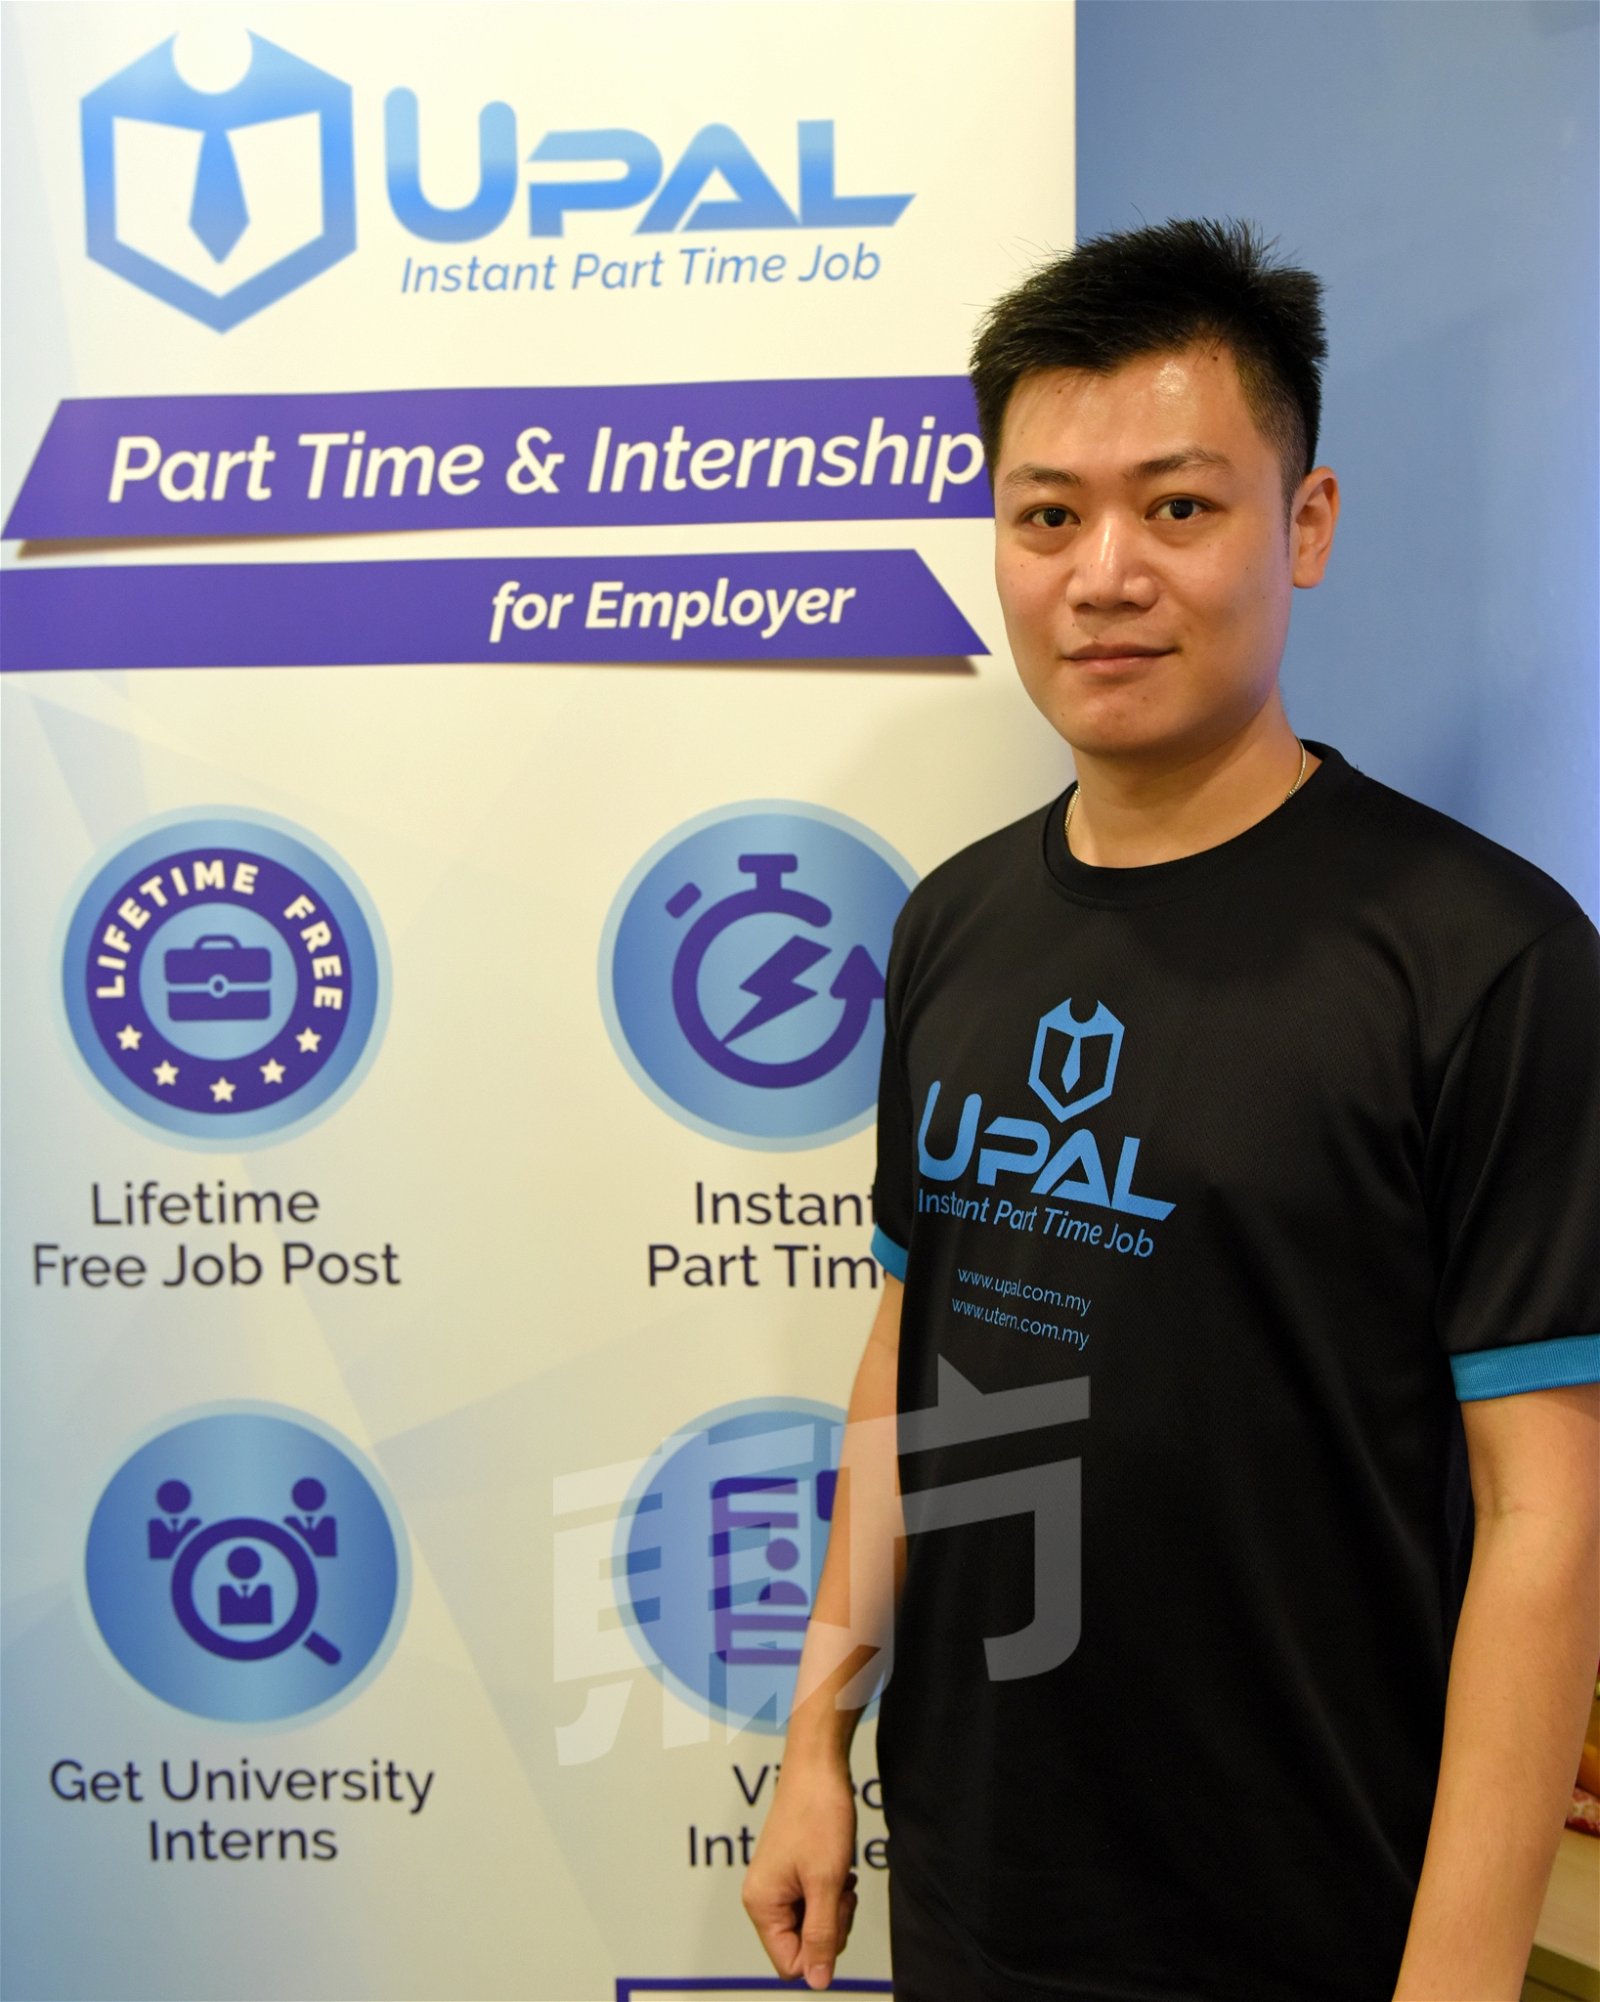 UP al创办人张伟明毕业自电脑科学学系， 8年前成立了网页与手机程序设计公司，一年半前又成立了大学生兼职平台UPal。